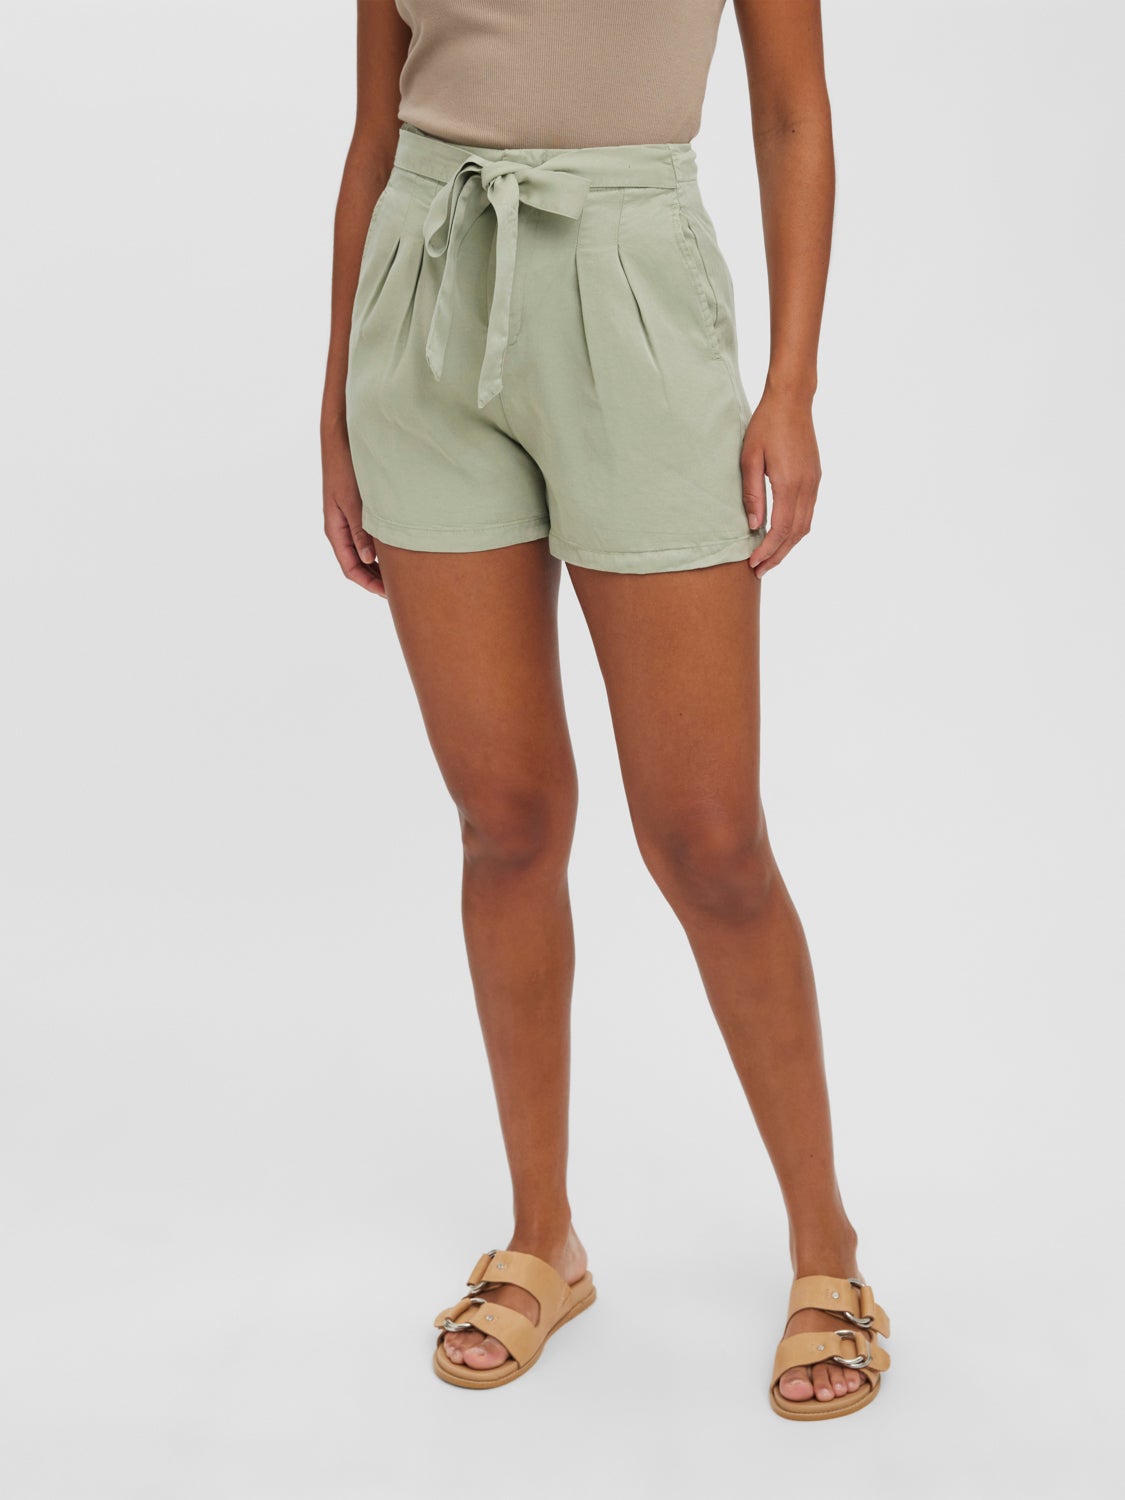 Moda Krótkie spodnie Krótkie szorty Vero Moda Kr\u00f3tkie szorty zielony W stylu casual 